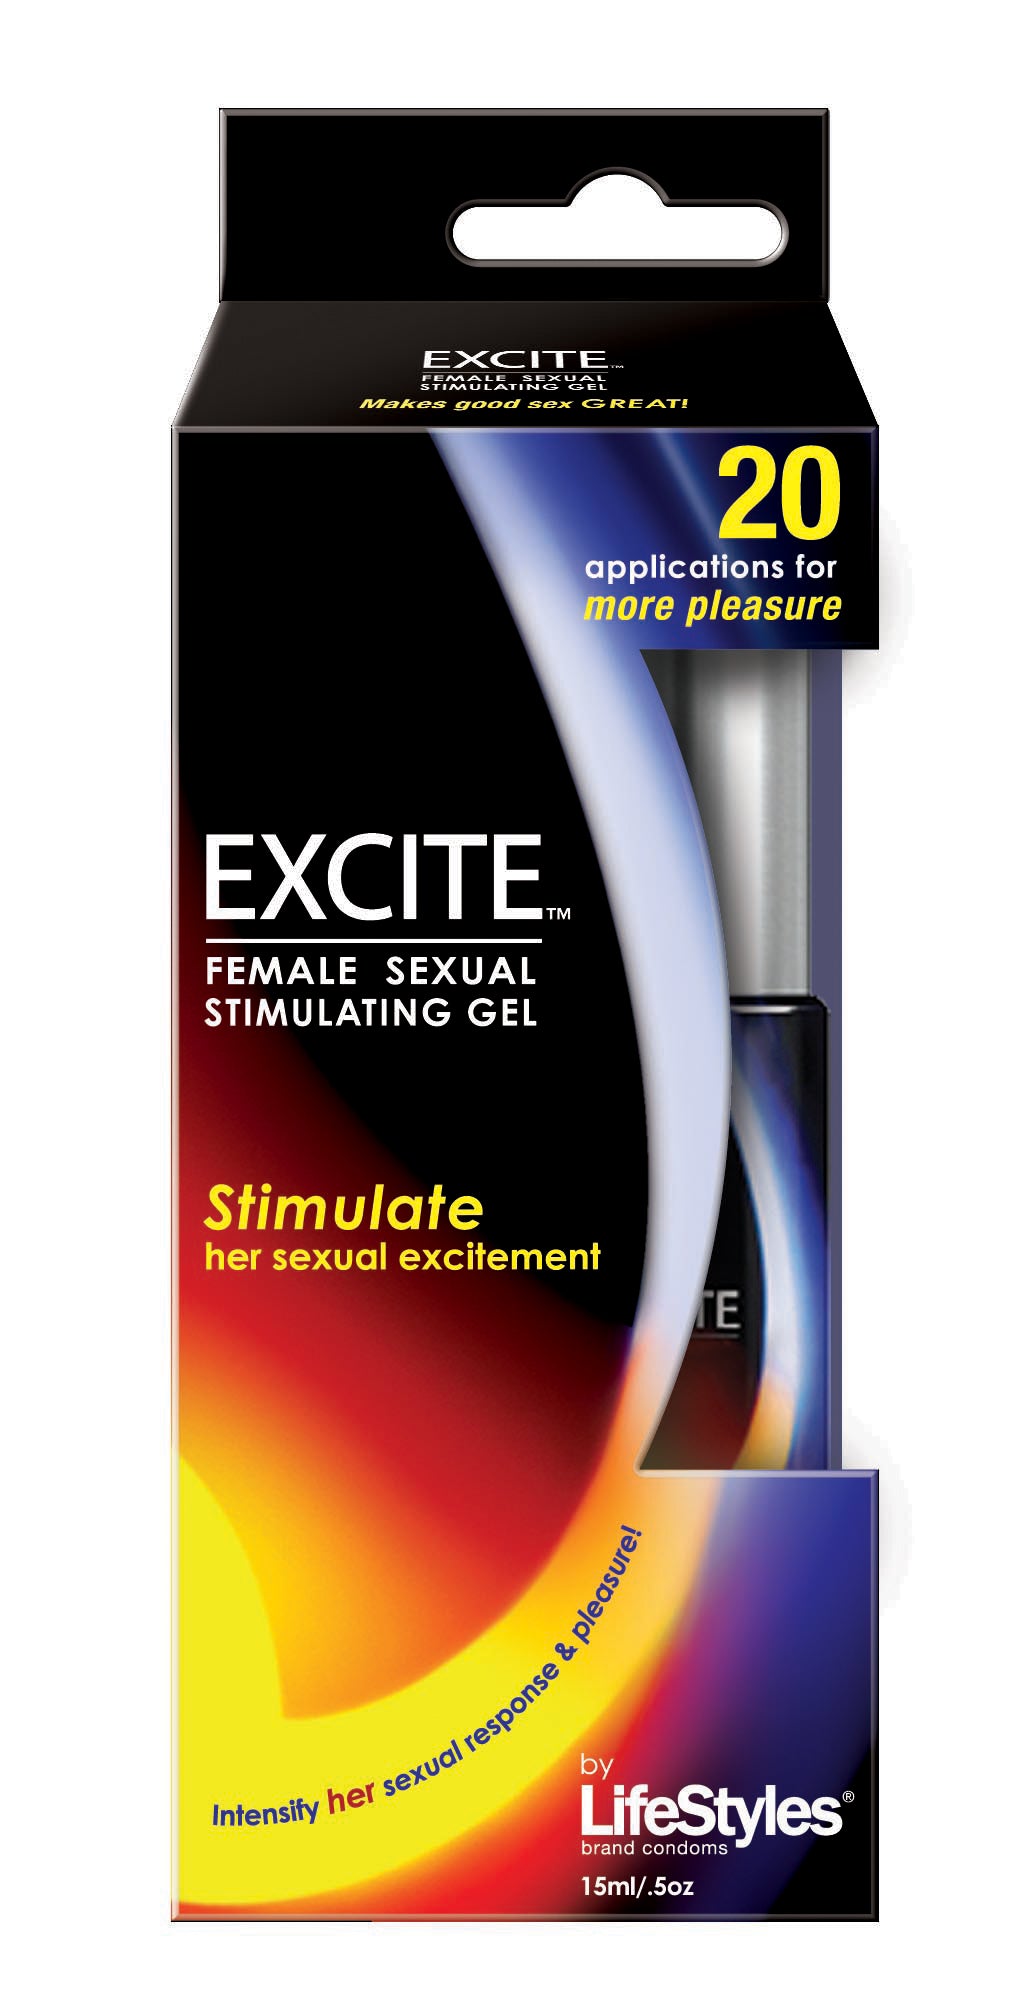 Lifestyles Excite Female Sexual Stimulating Gel